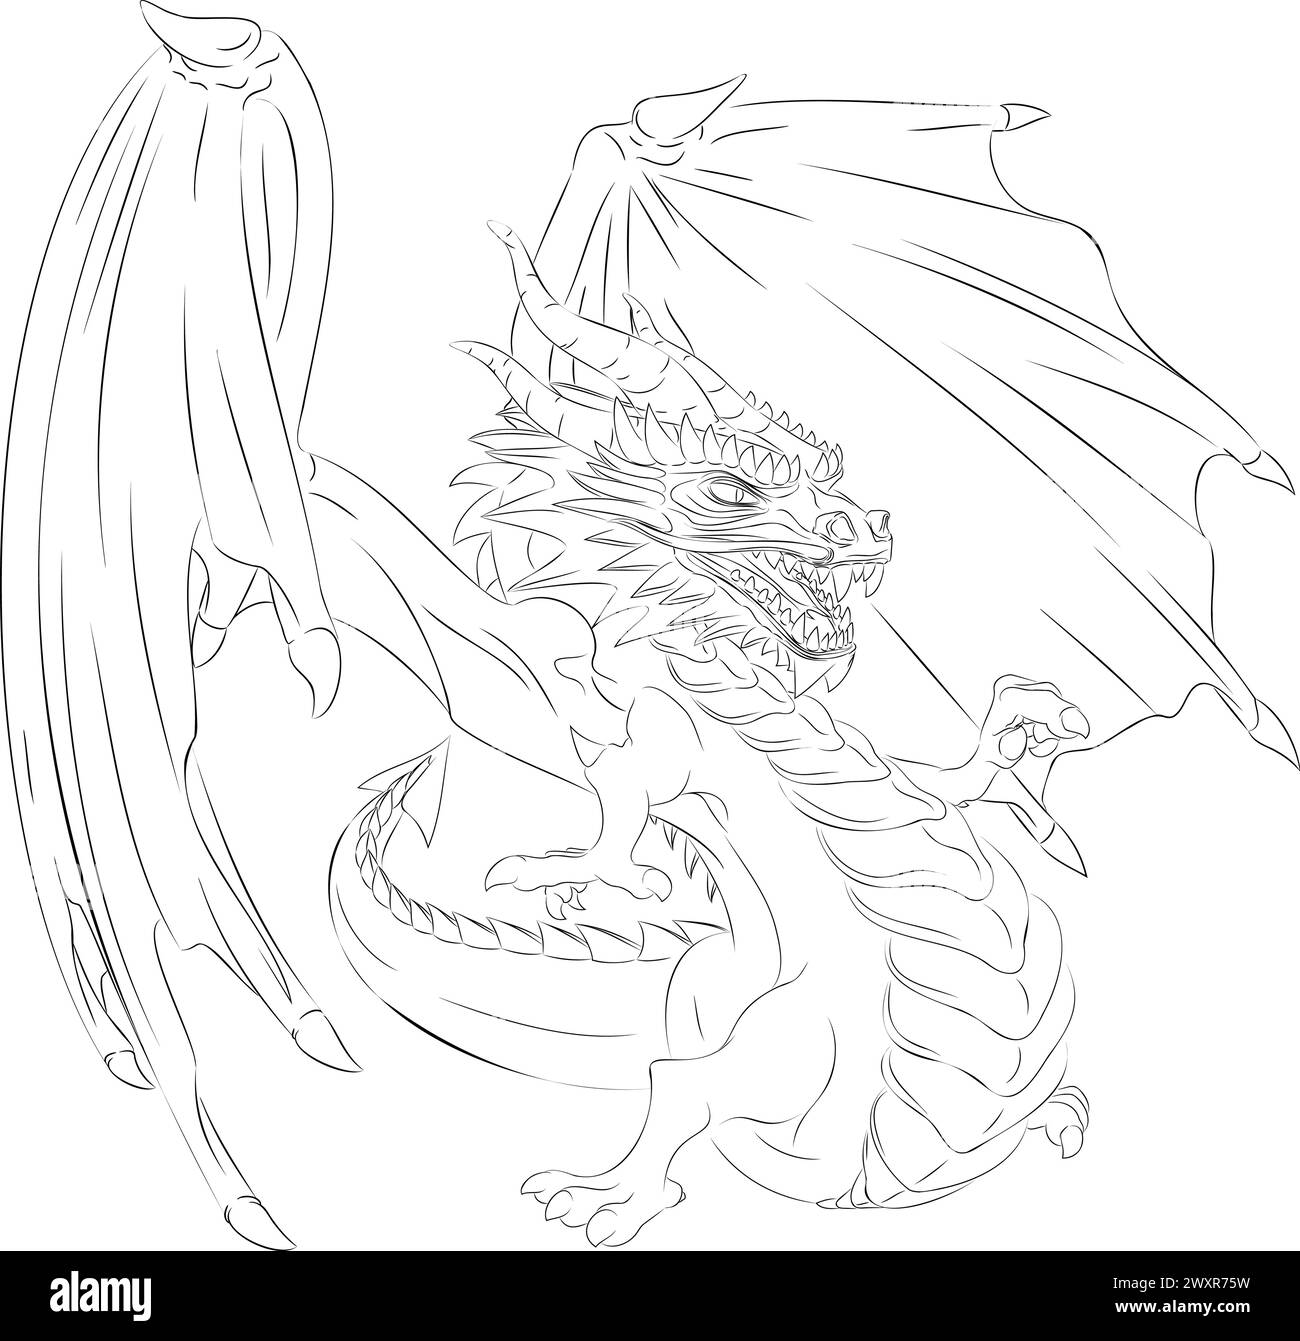 Arte di linea del drago con le ali. Illustrazione vettoriale del drago alato verde che punta con il dito della zampa destra. Drago con ali, corna, denti Illustrazione Vettoriale